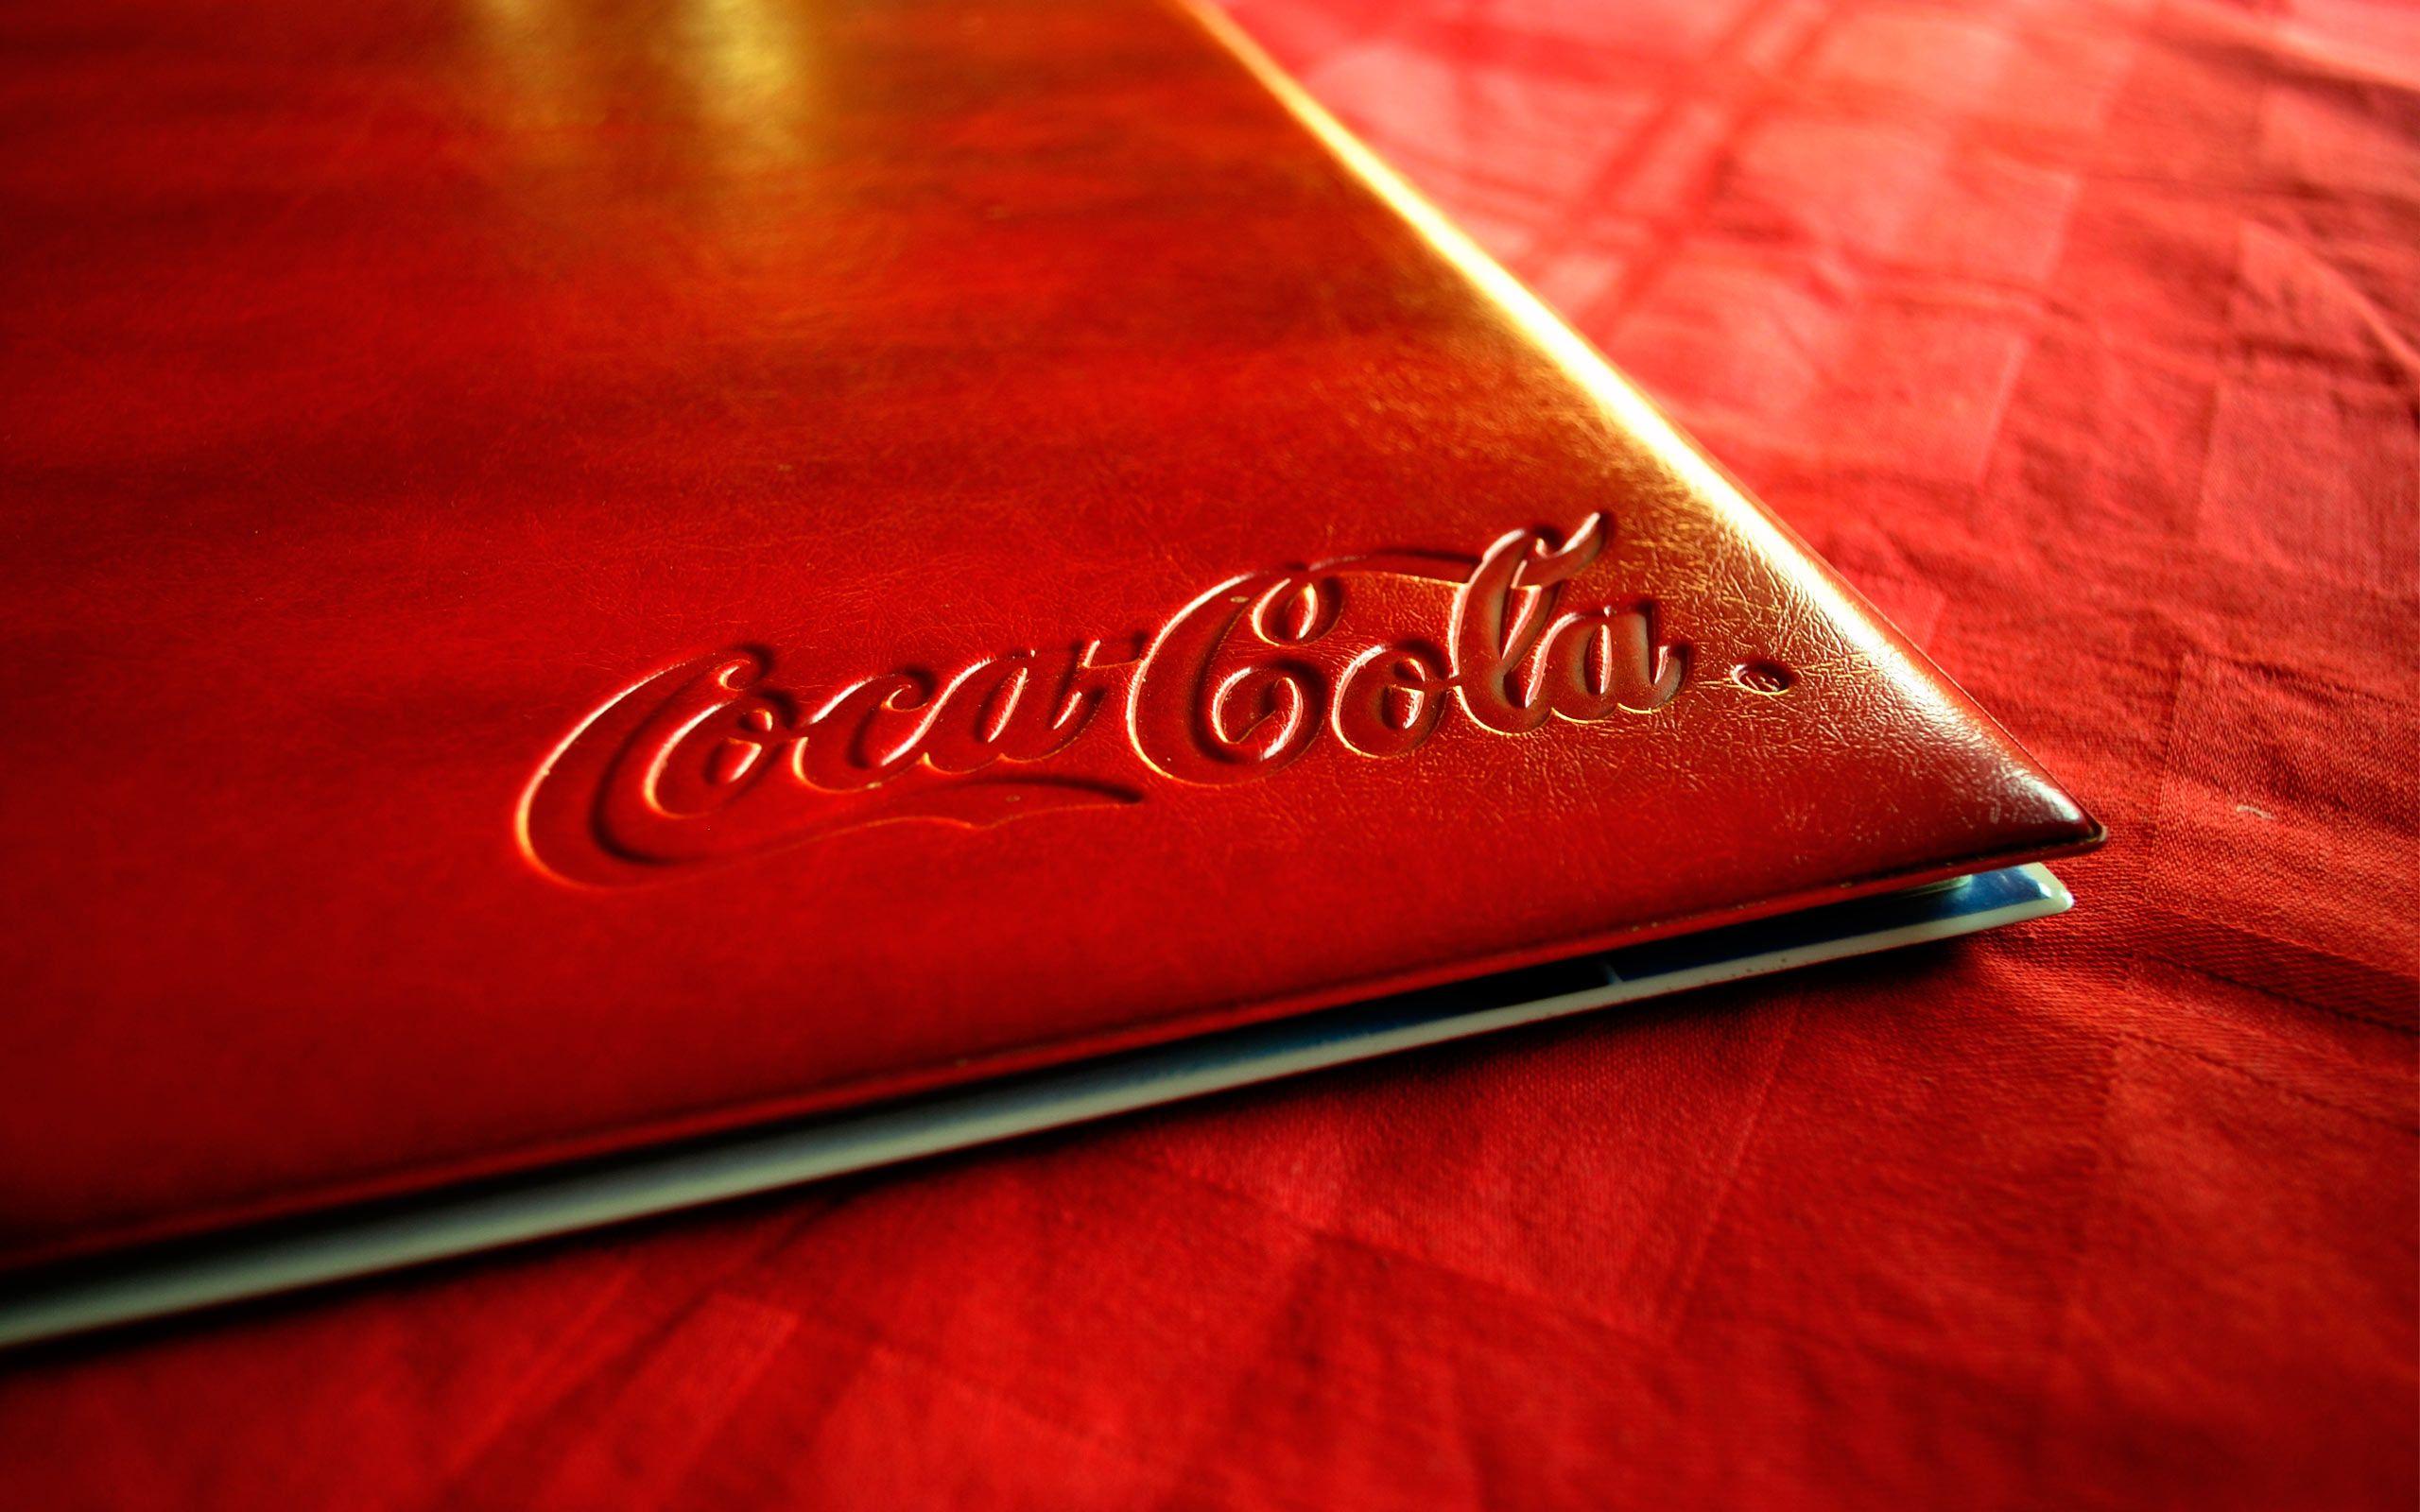 Coca Cola Wallpaper 46259 2560x1600 px